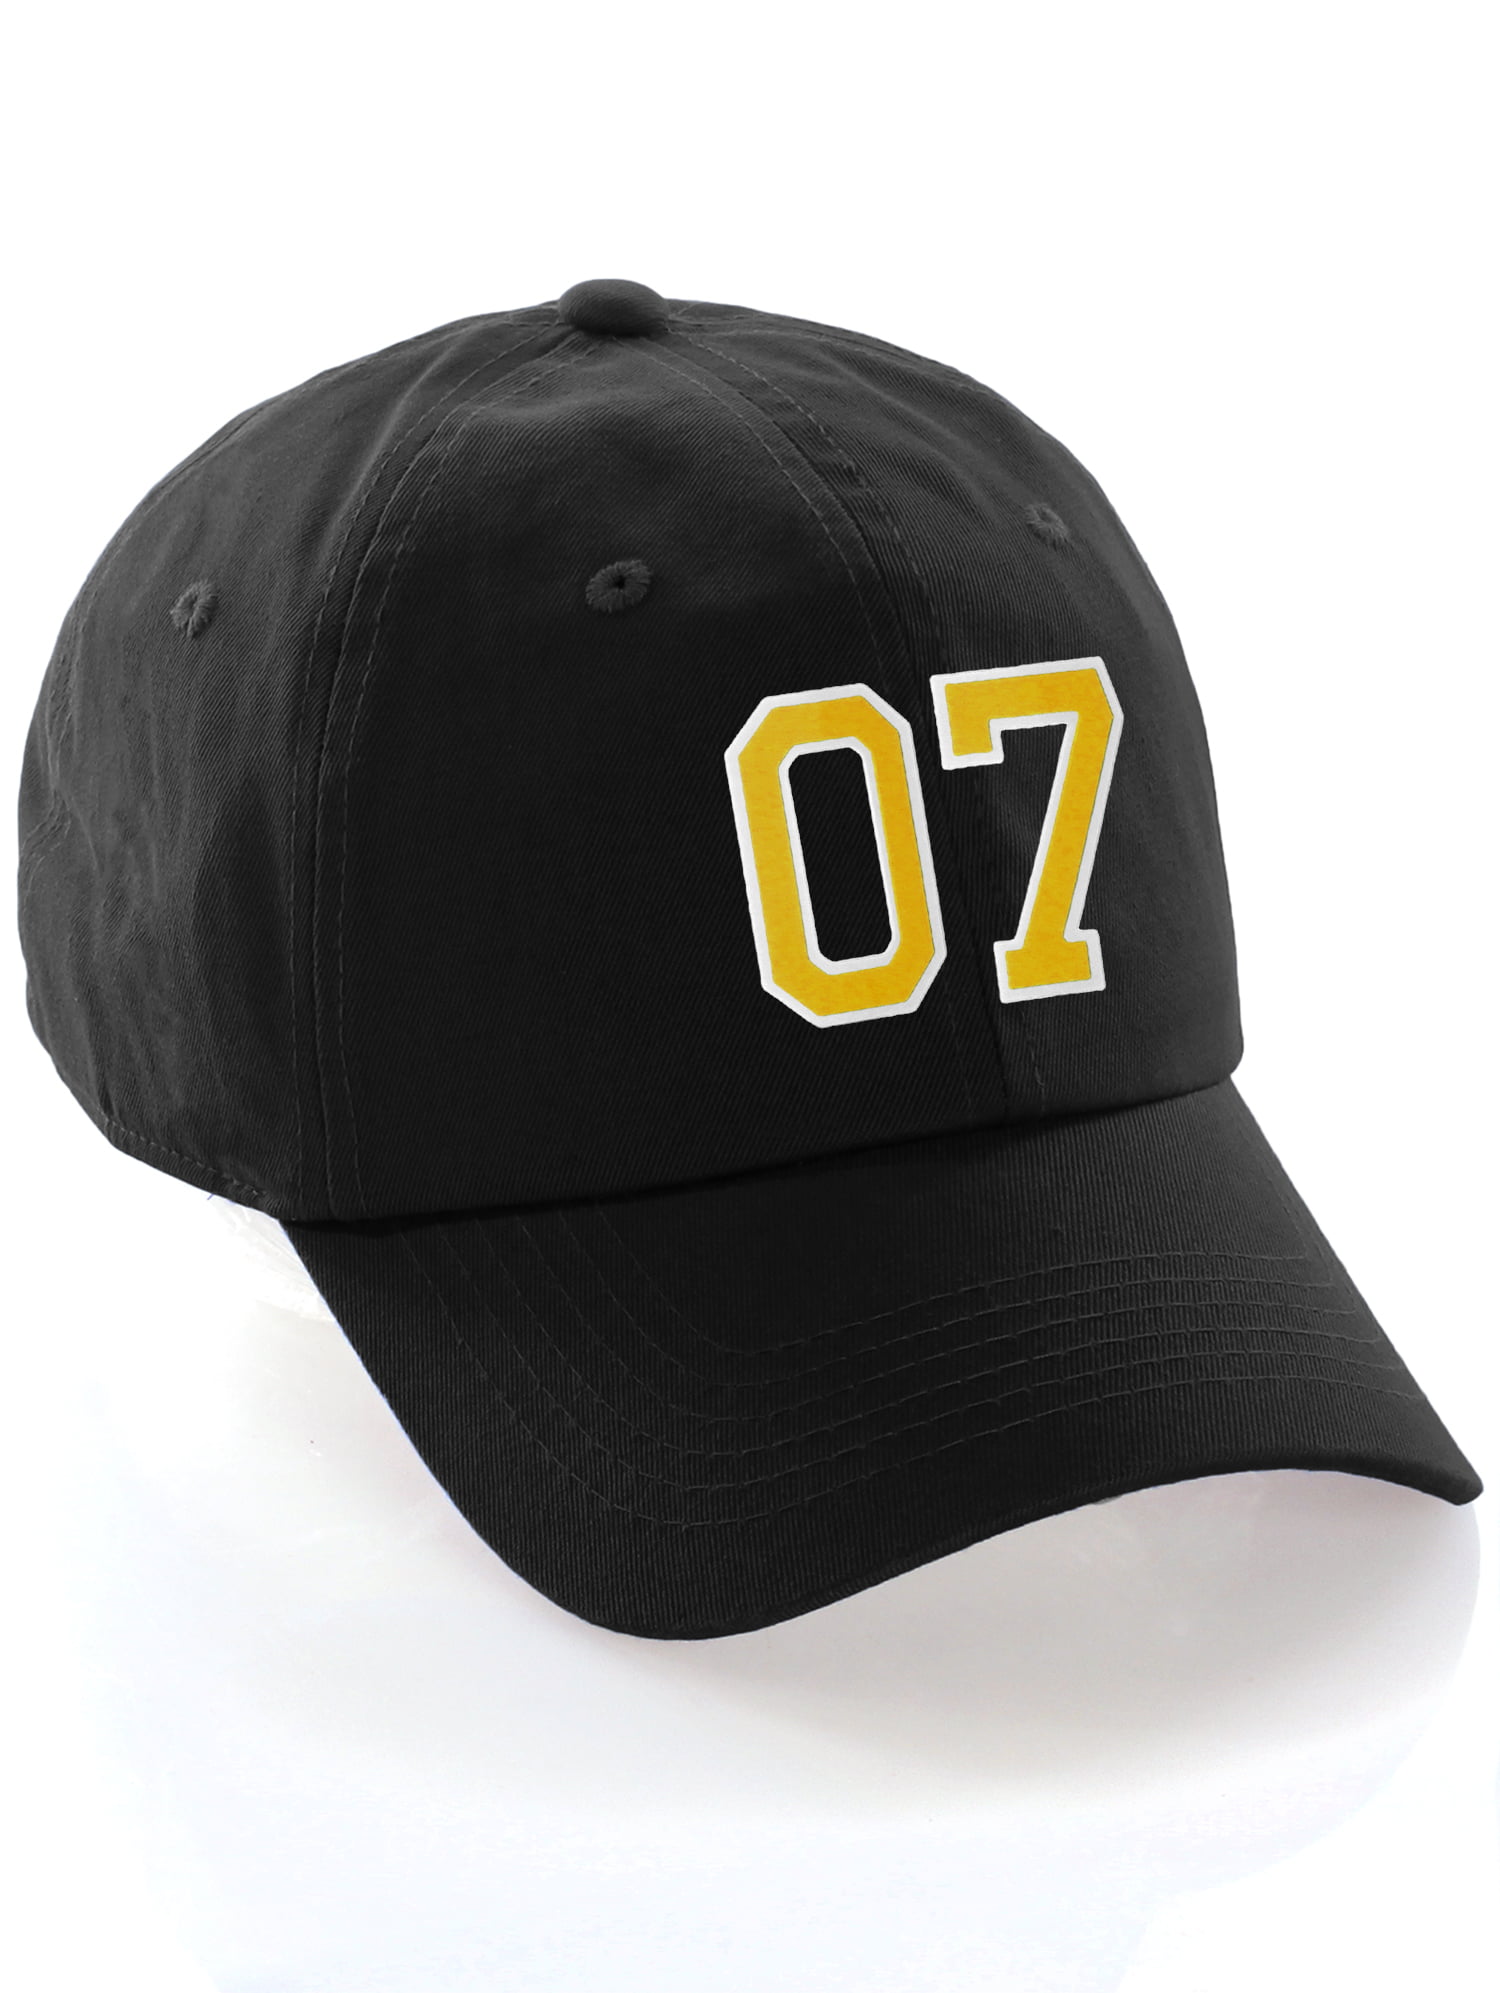 Verrijking luchthaven Landelijk Customized Number Hat 00 to 99 Team Colors Baseball Cap, Black Hat White  Gold Number 04 - Walmart.com